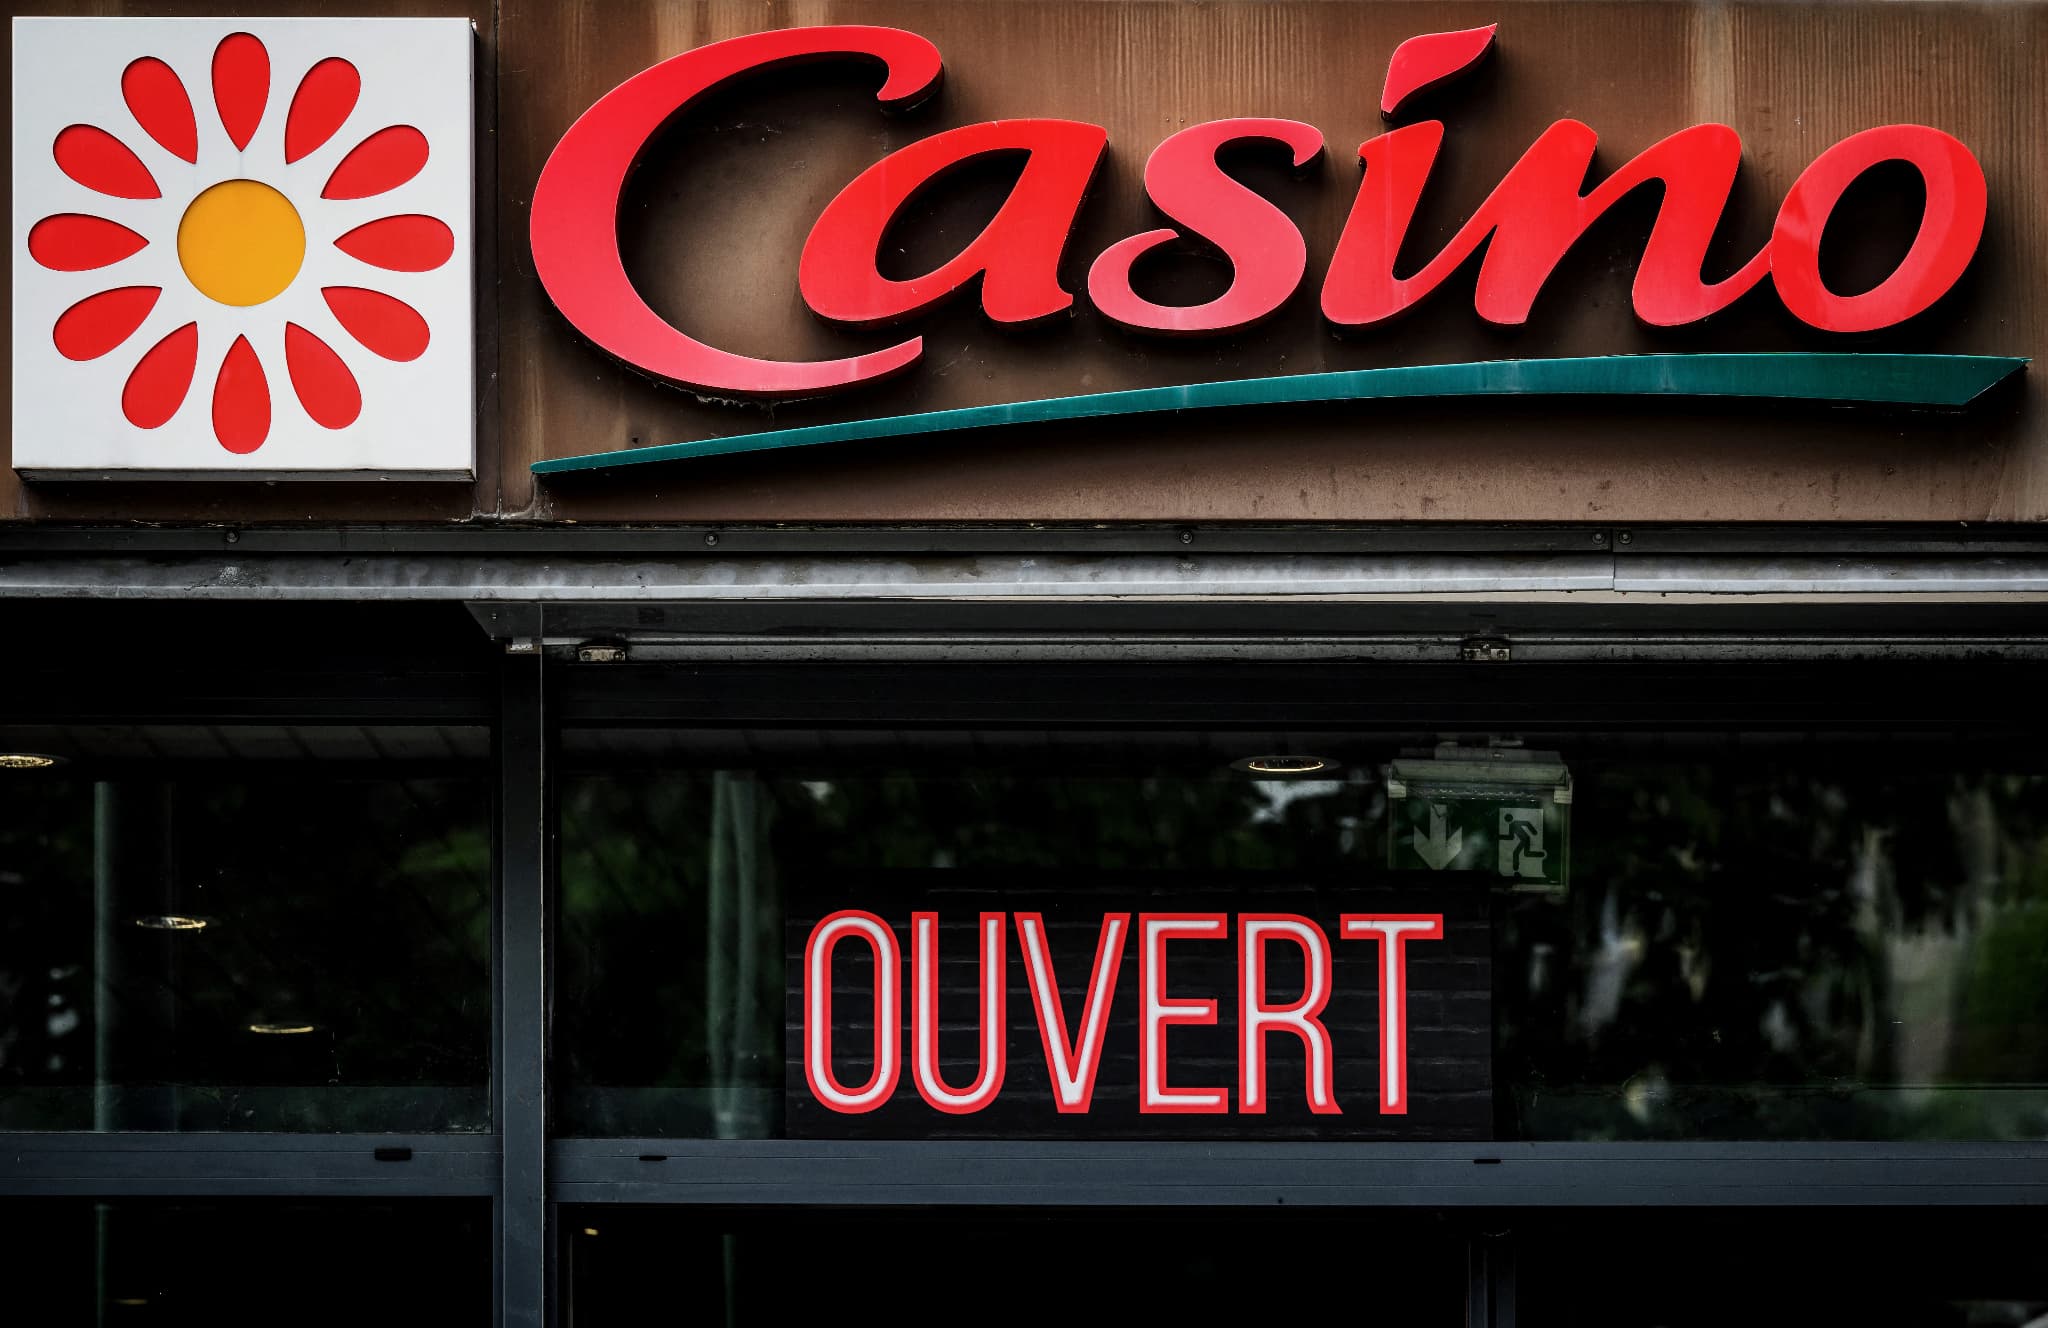 casino a trouvé un accord avec carrefour pour lui céder 25 magasins